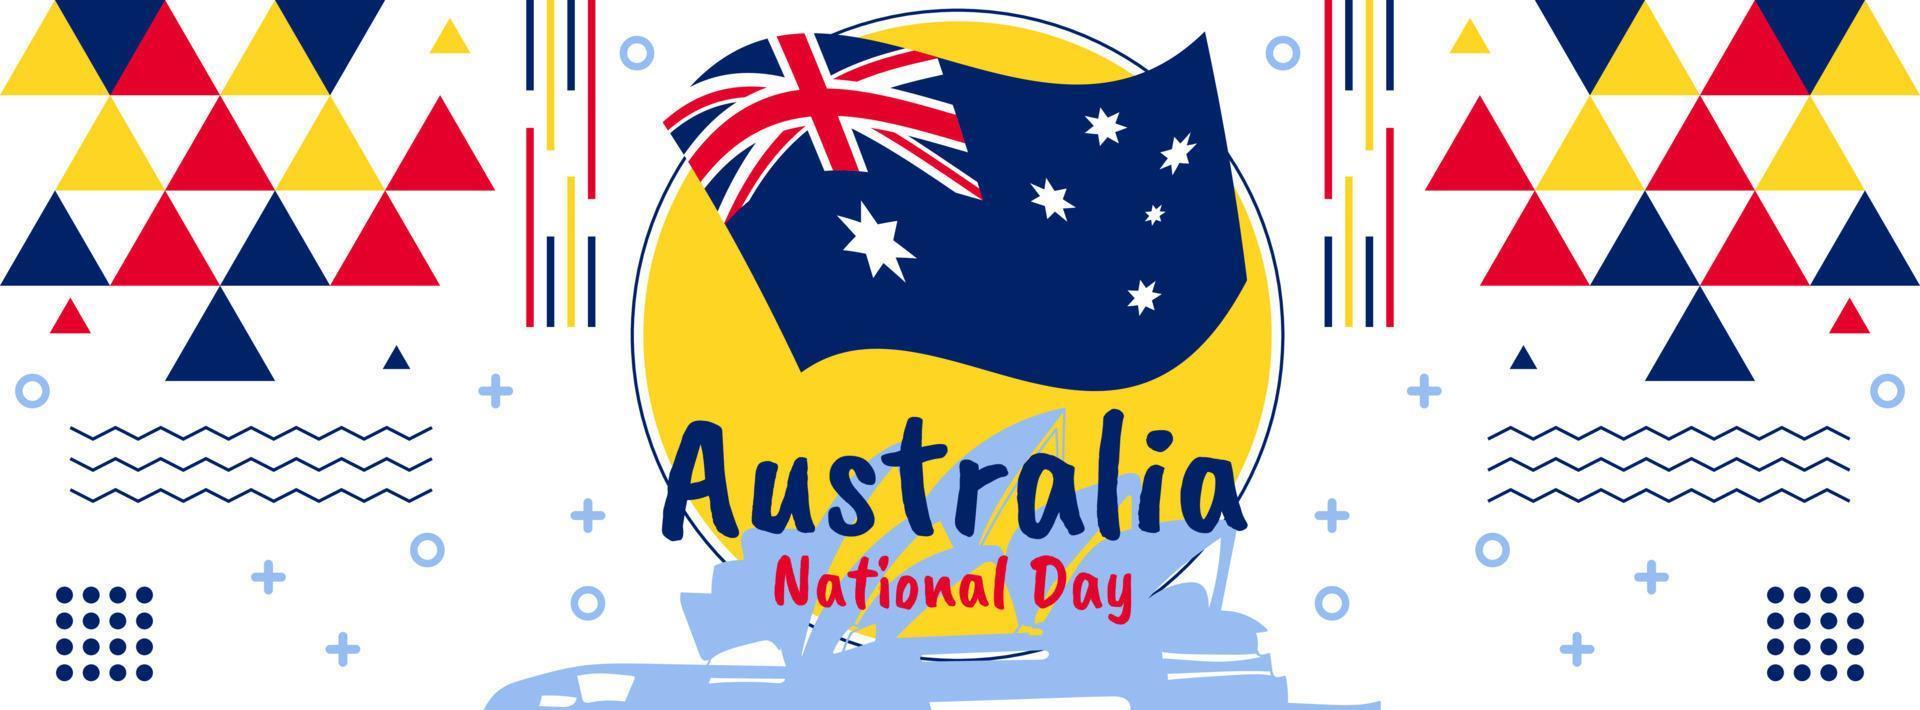 design de banner do dia da austrália para 26 de janeiro. banner geométrico abstrato para o dia nacional da austrália. tema da bandeira australiana com fundo de marcos de sydney. vetor